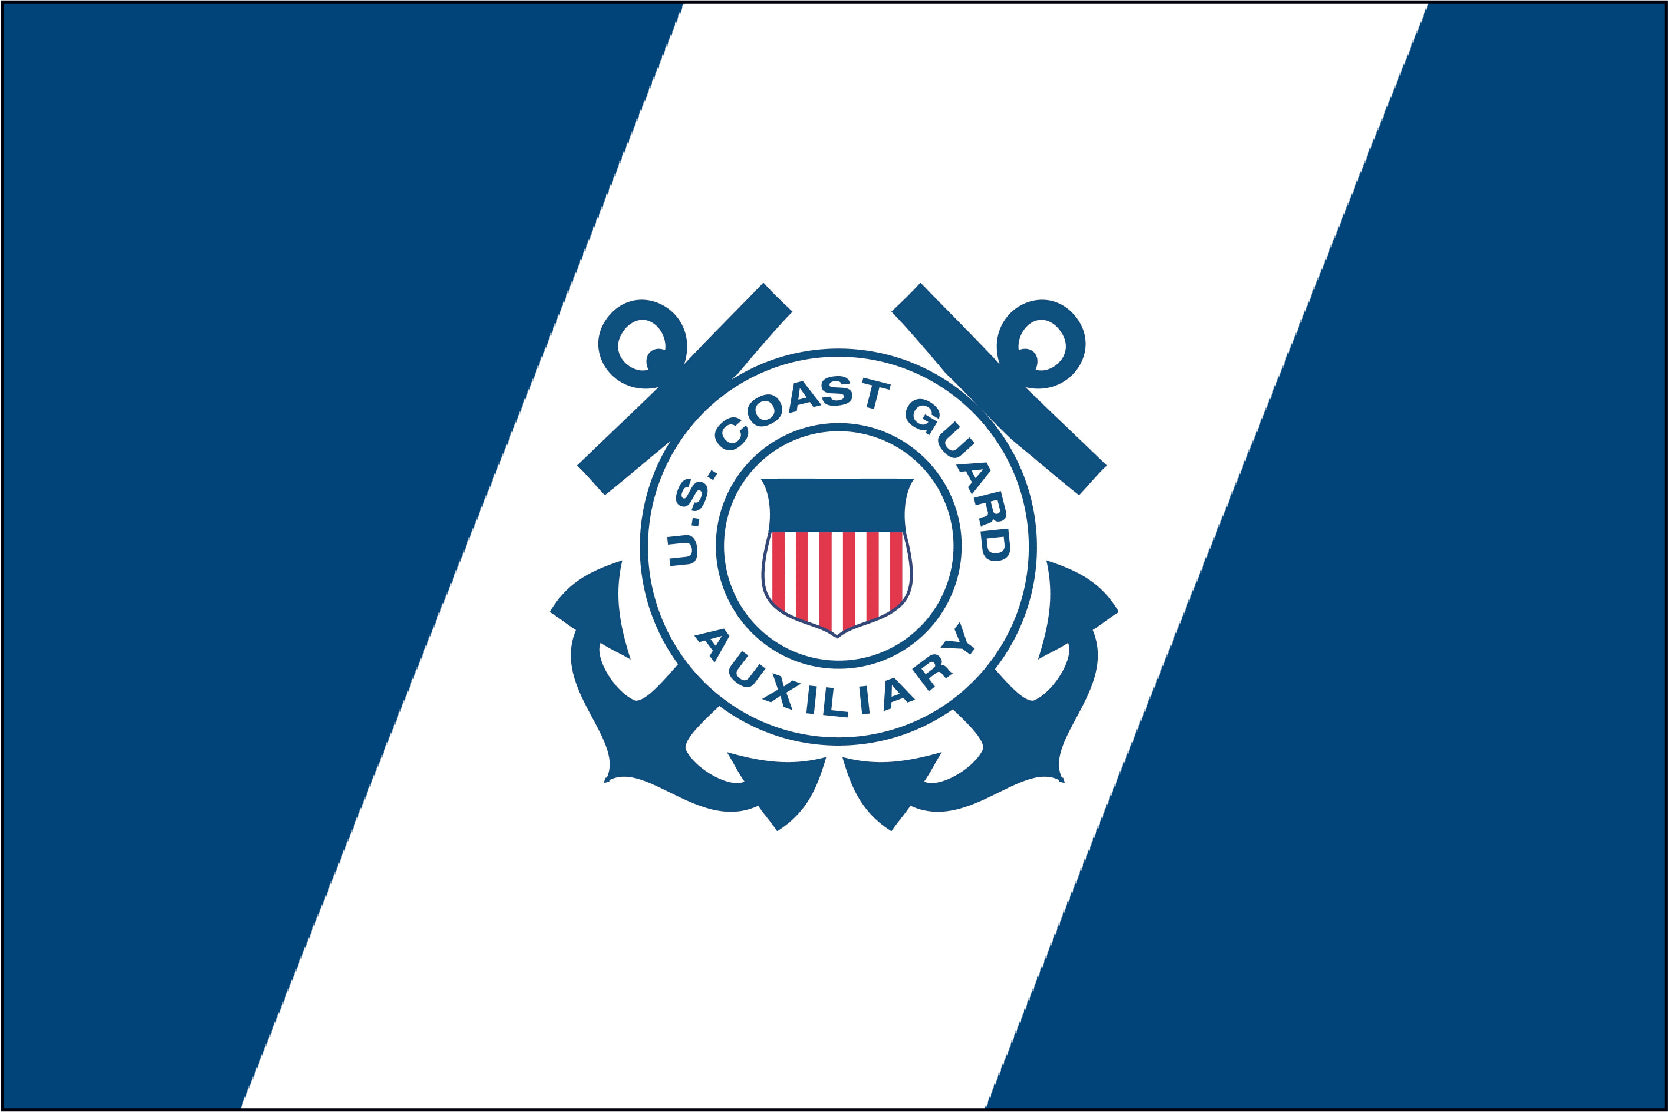 Coast Guard Auxiliary 15